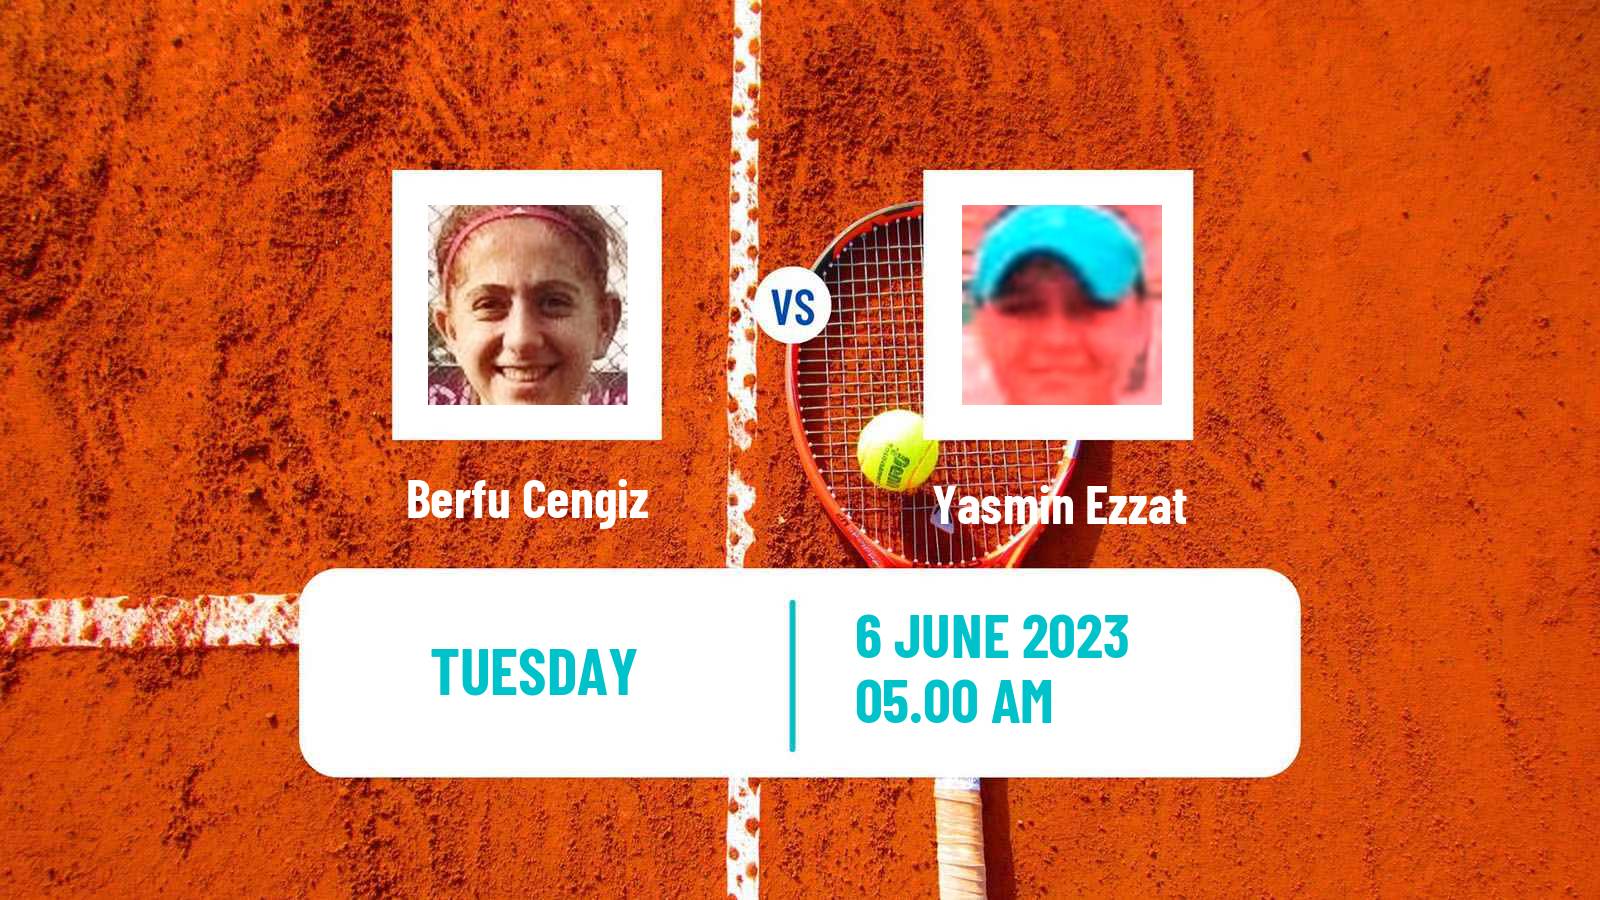 Tennis ITF W40 La Marsa Women Berfu Cengiz - Yasmin Ezzat